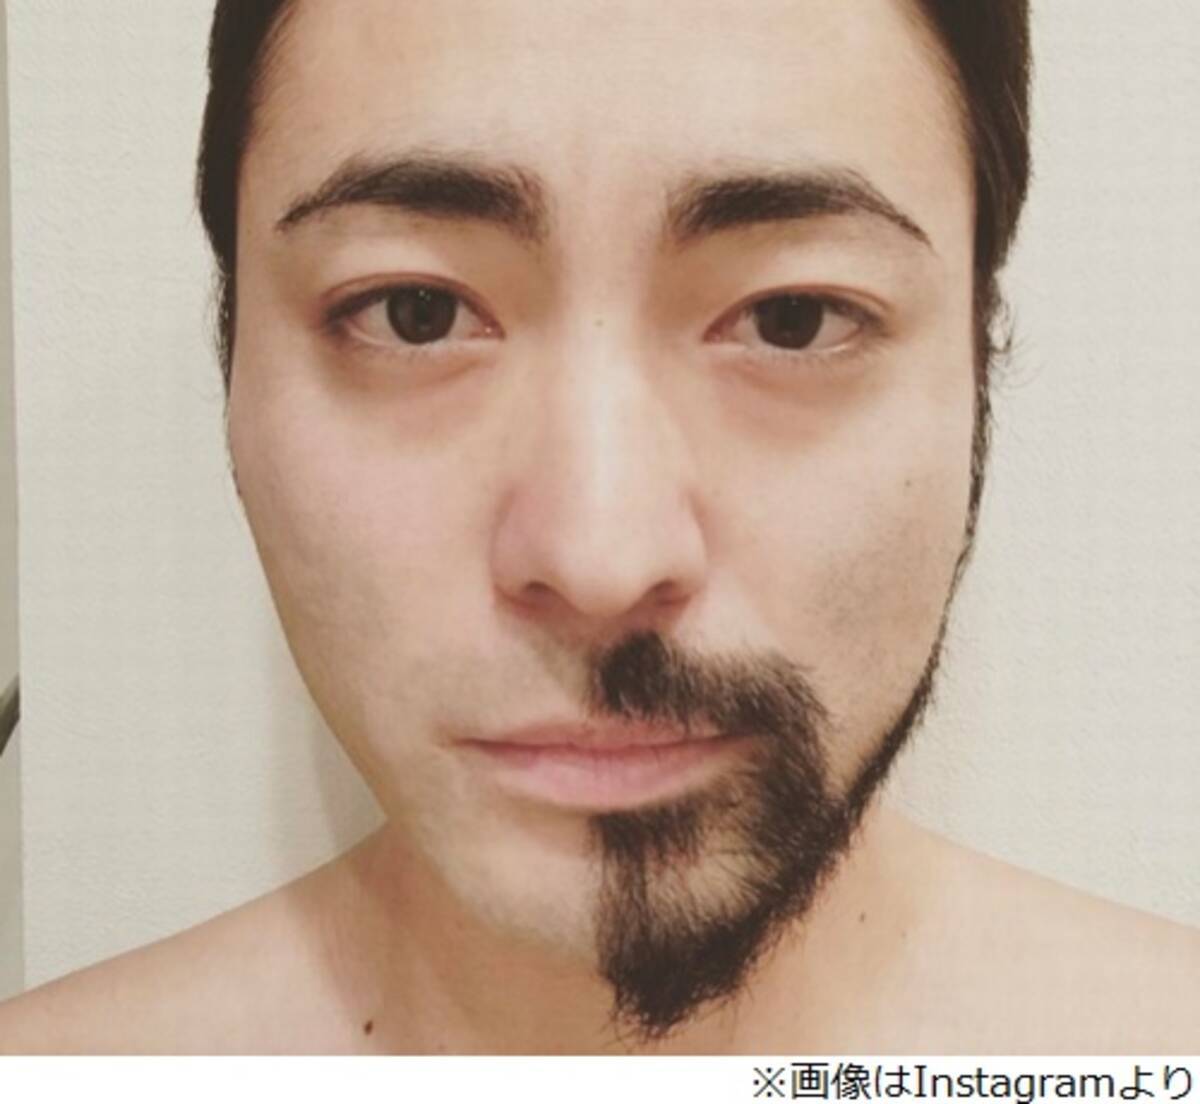 山田孝之 髭は重要 とわかる比較画像 17年4月23日 エキサイトニュース